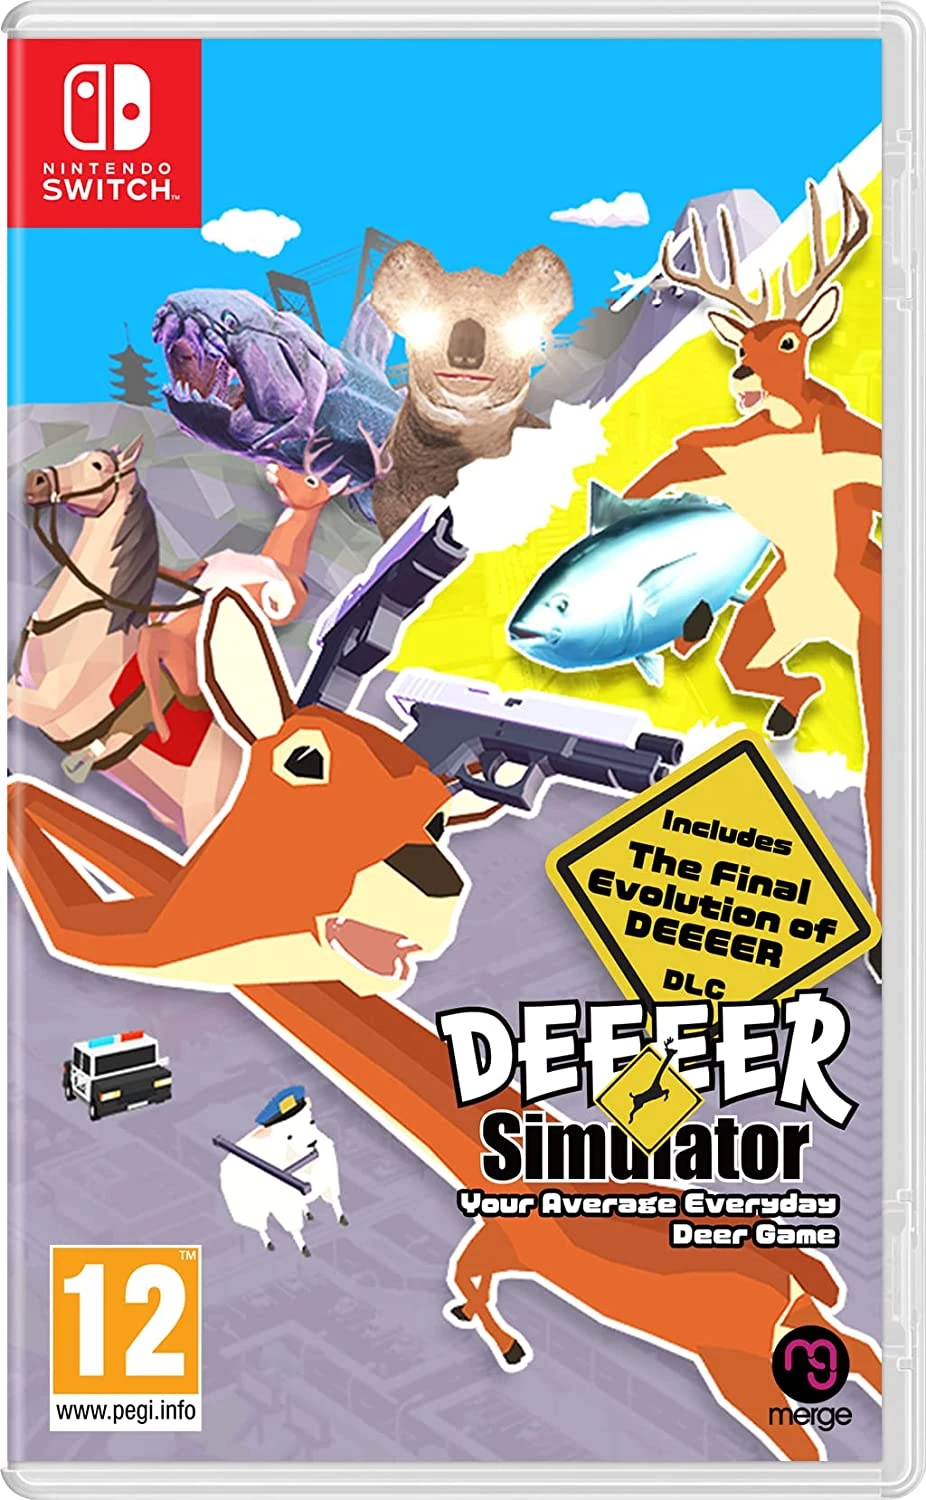 Deeeer Simulator - Your Average Everyday Deer Game (Switch), Merge Games